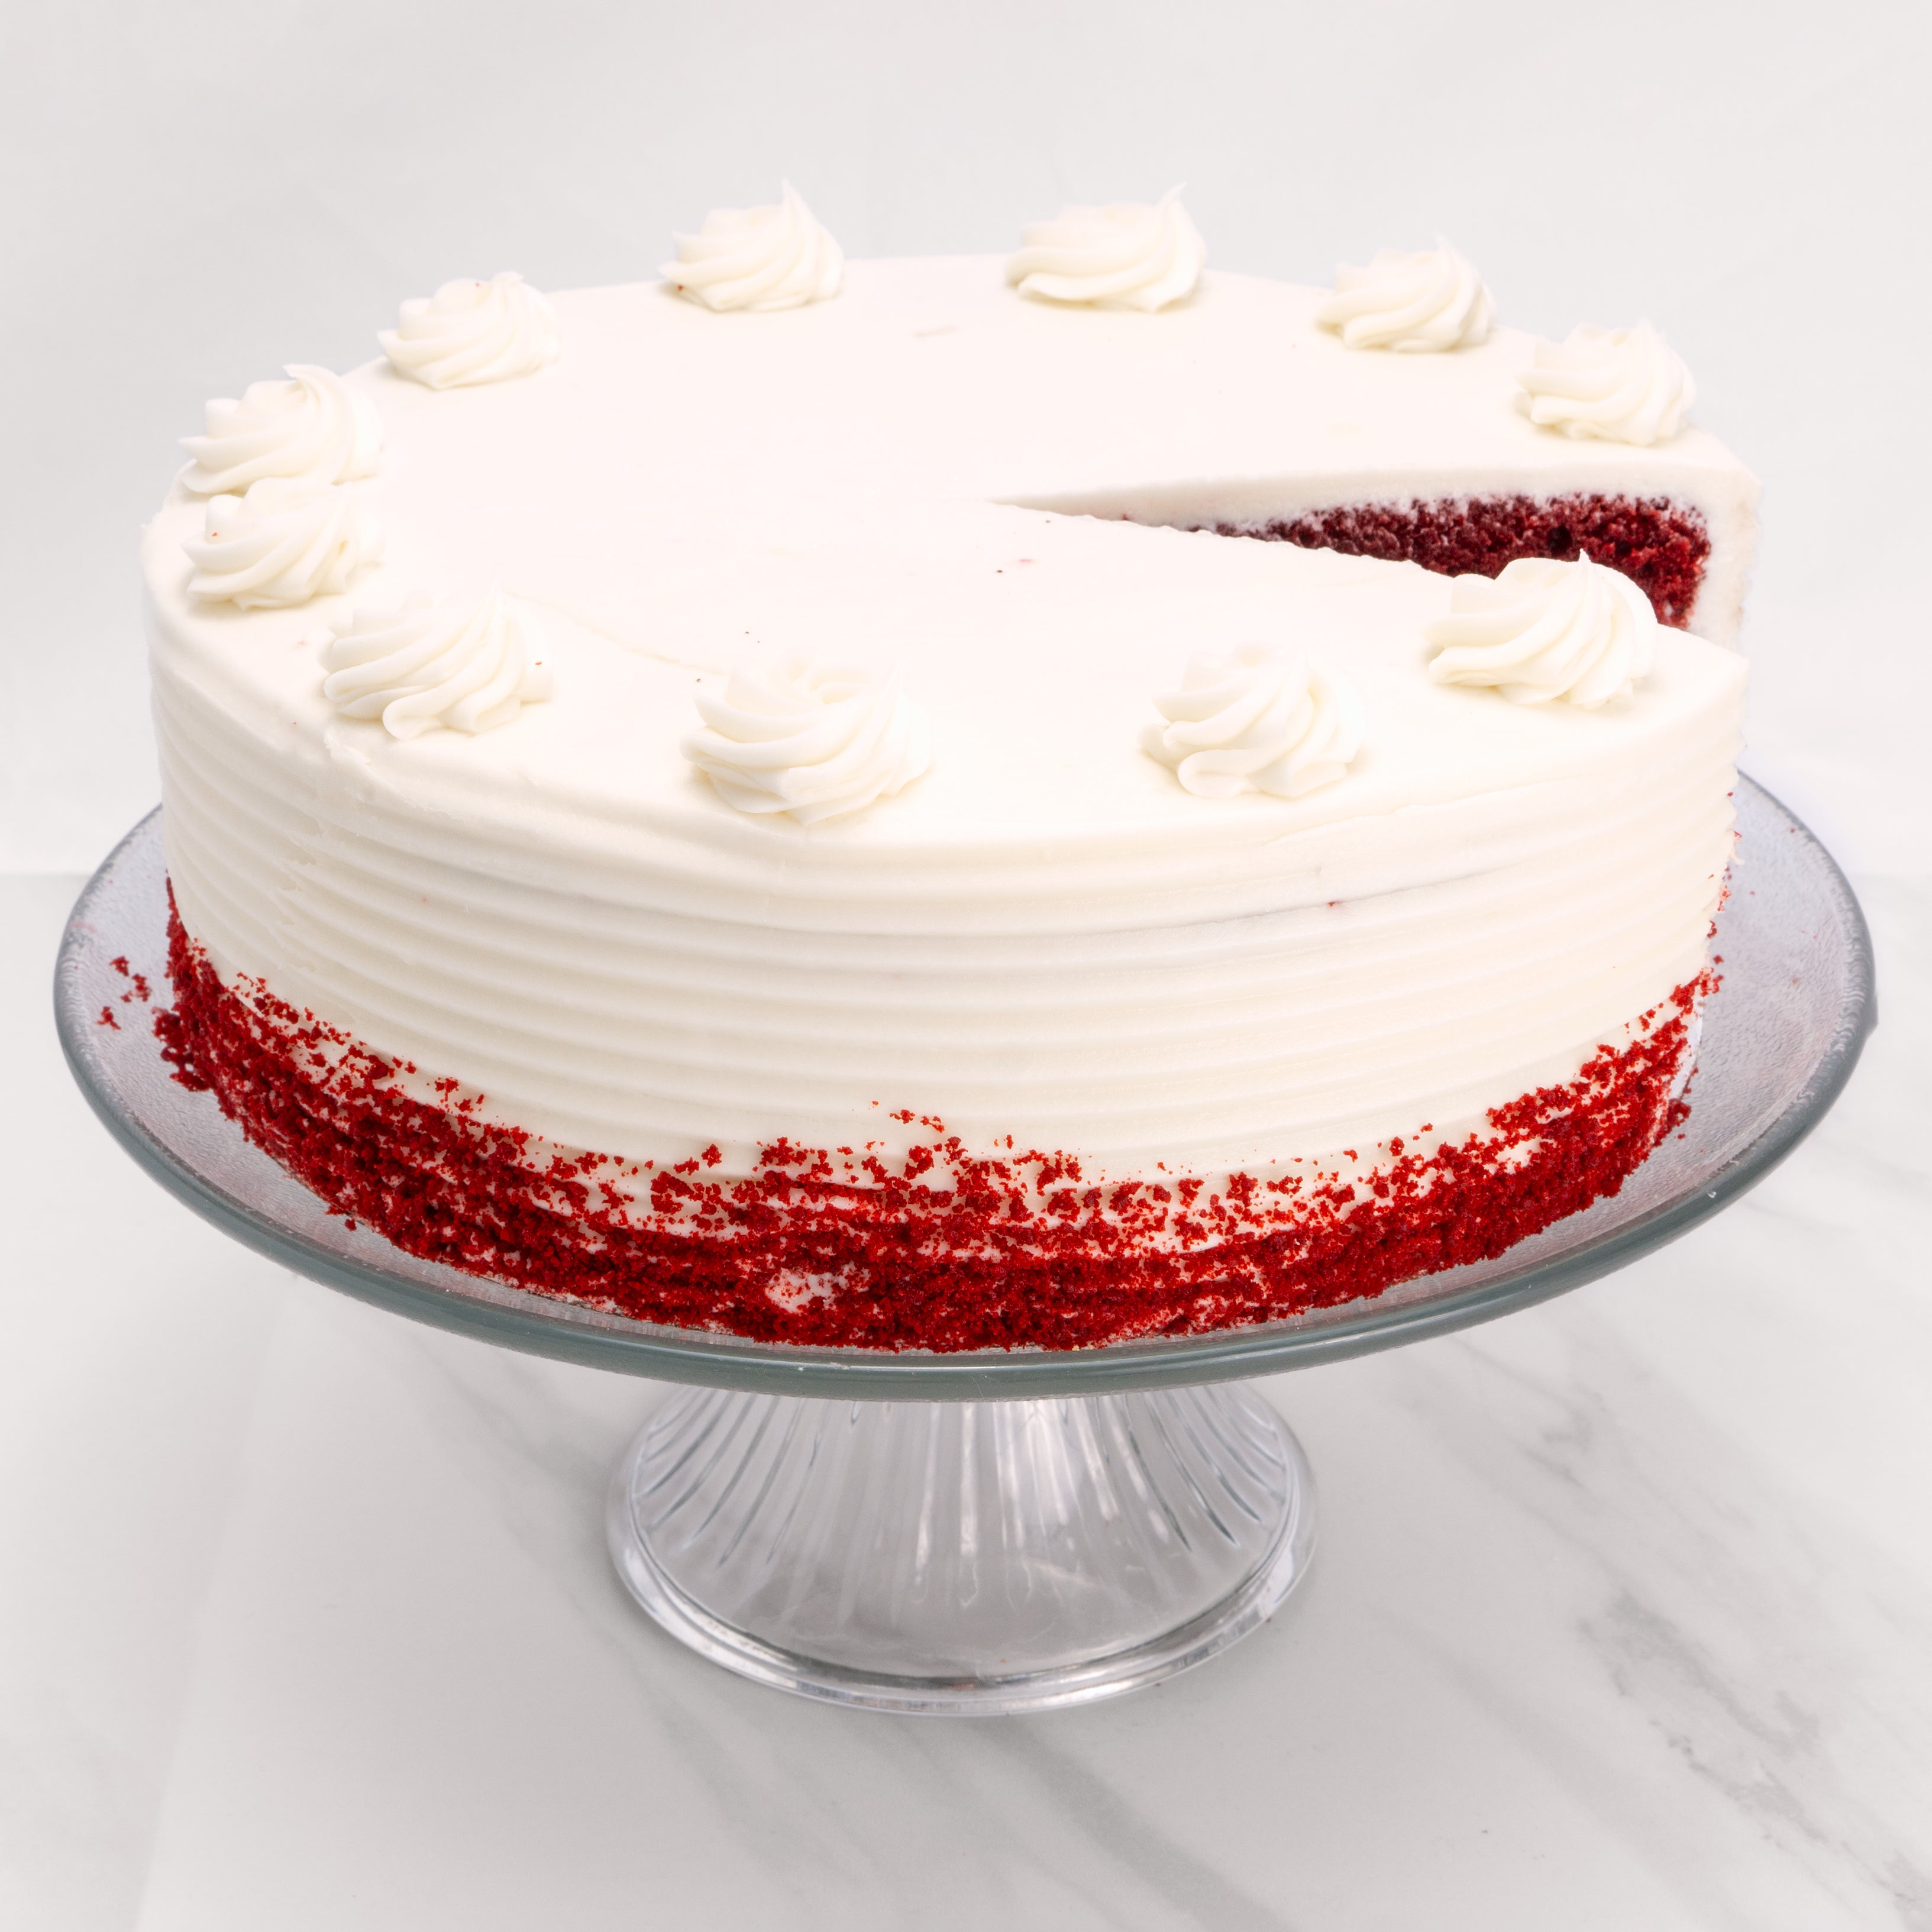 Best Red velvet birthday cake ideas on Pinterest | Easy cake decorating, Velvet  cake recipes, Red velvet cake recipe